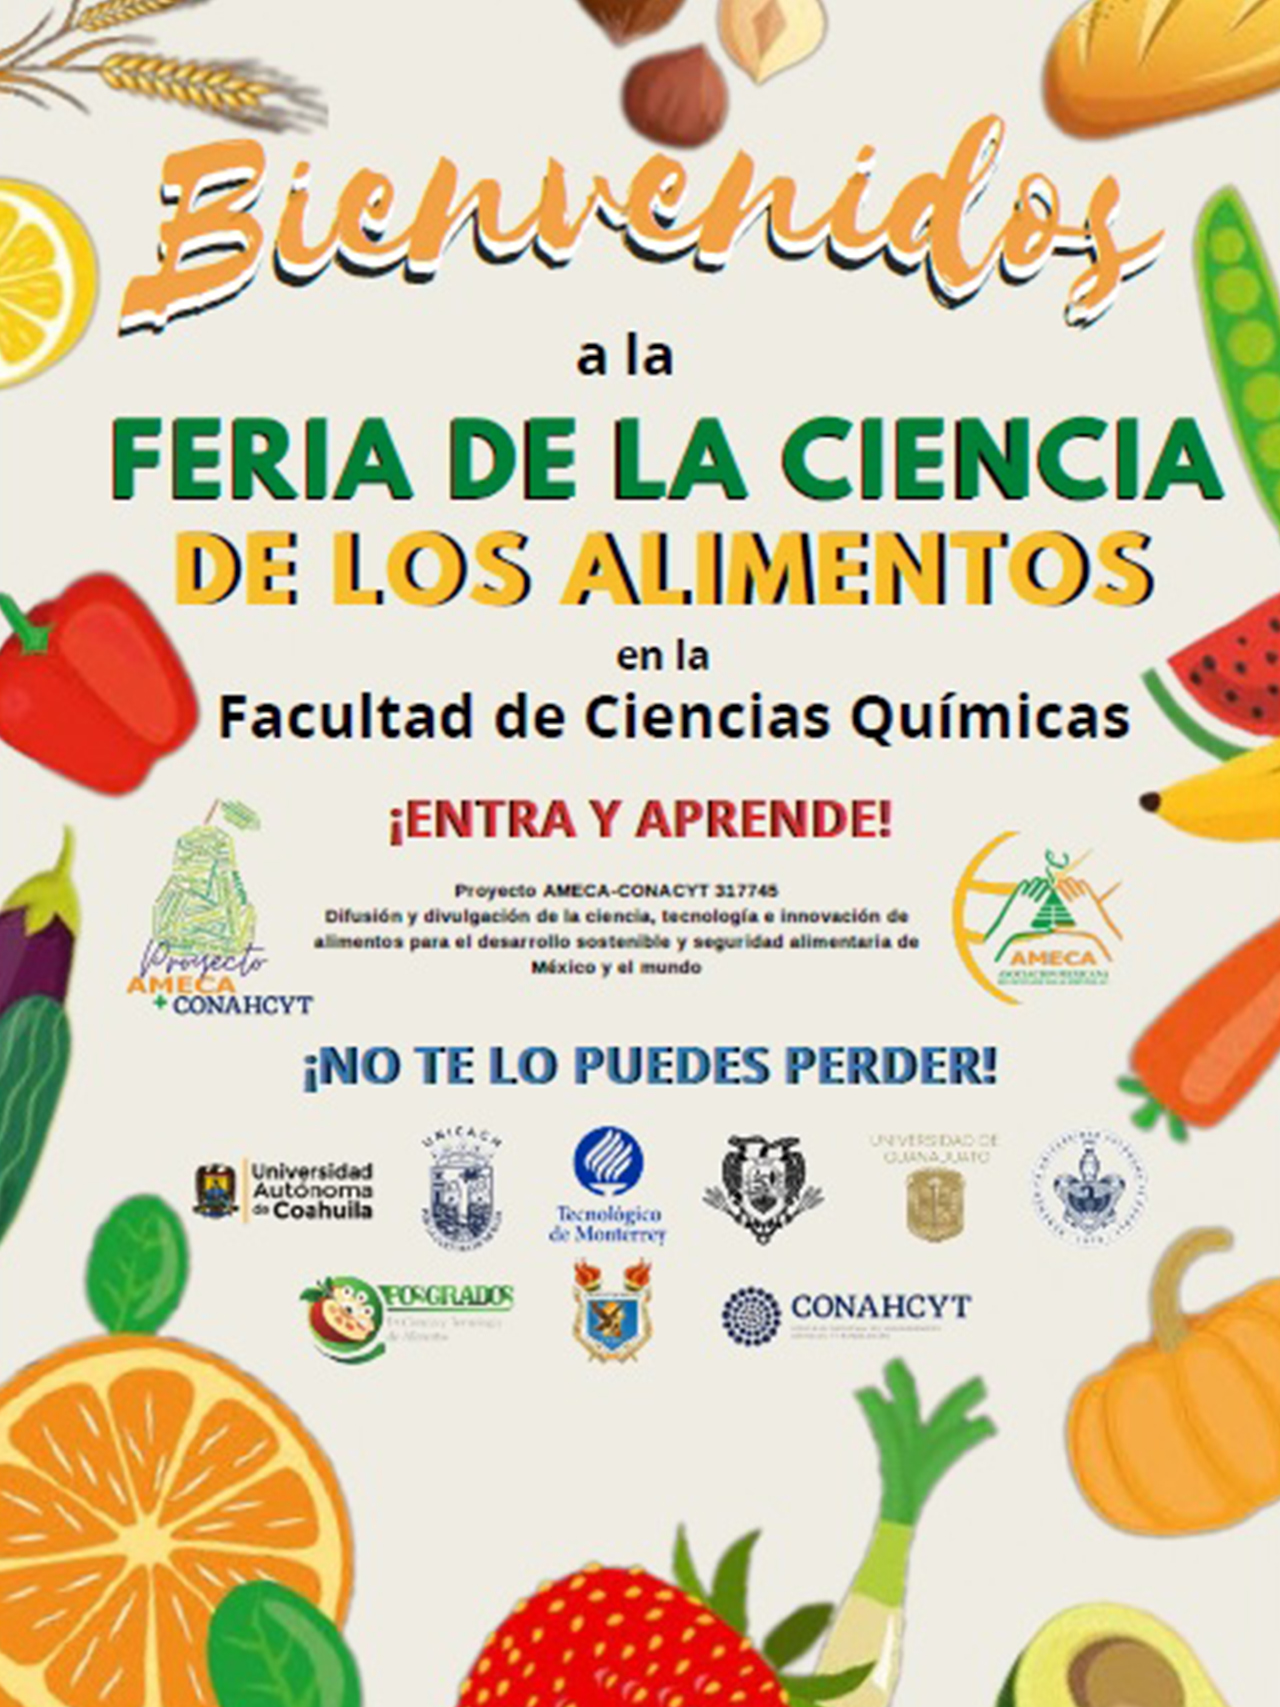 Feria de la ciencia de los alimentos. Saltillo, Coahuila - tortillas fortificadas - AMECA, AC